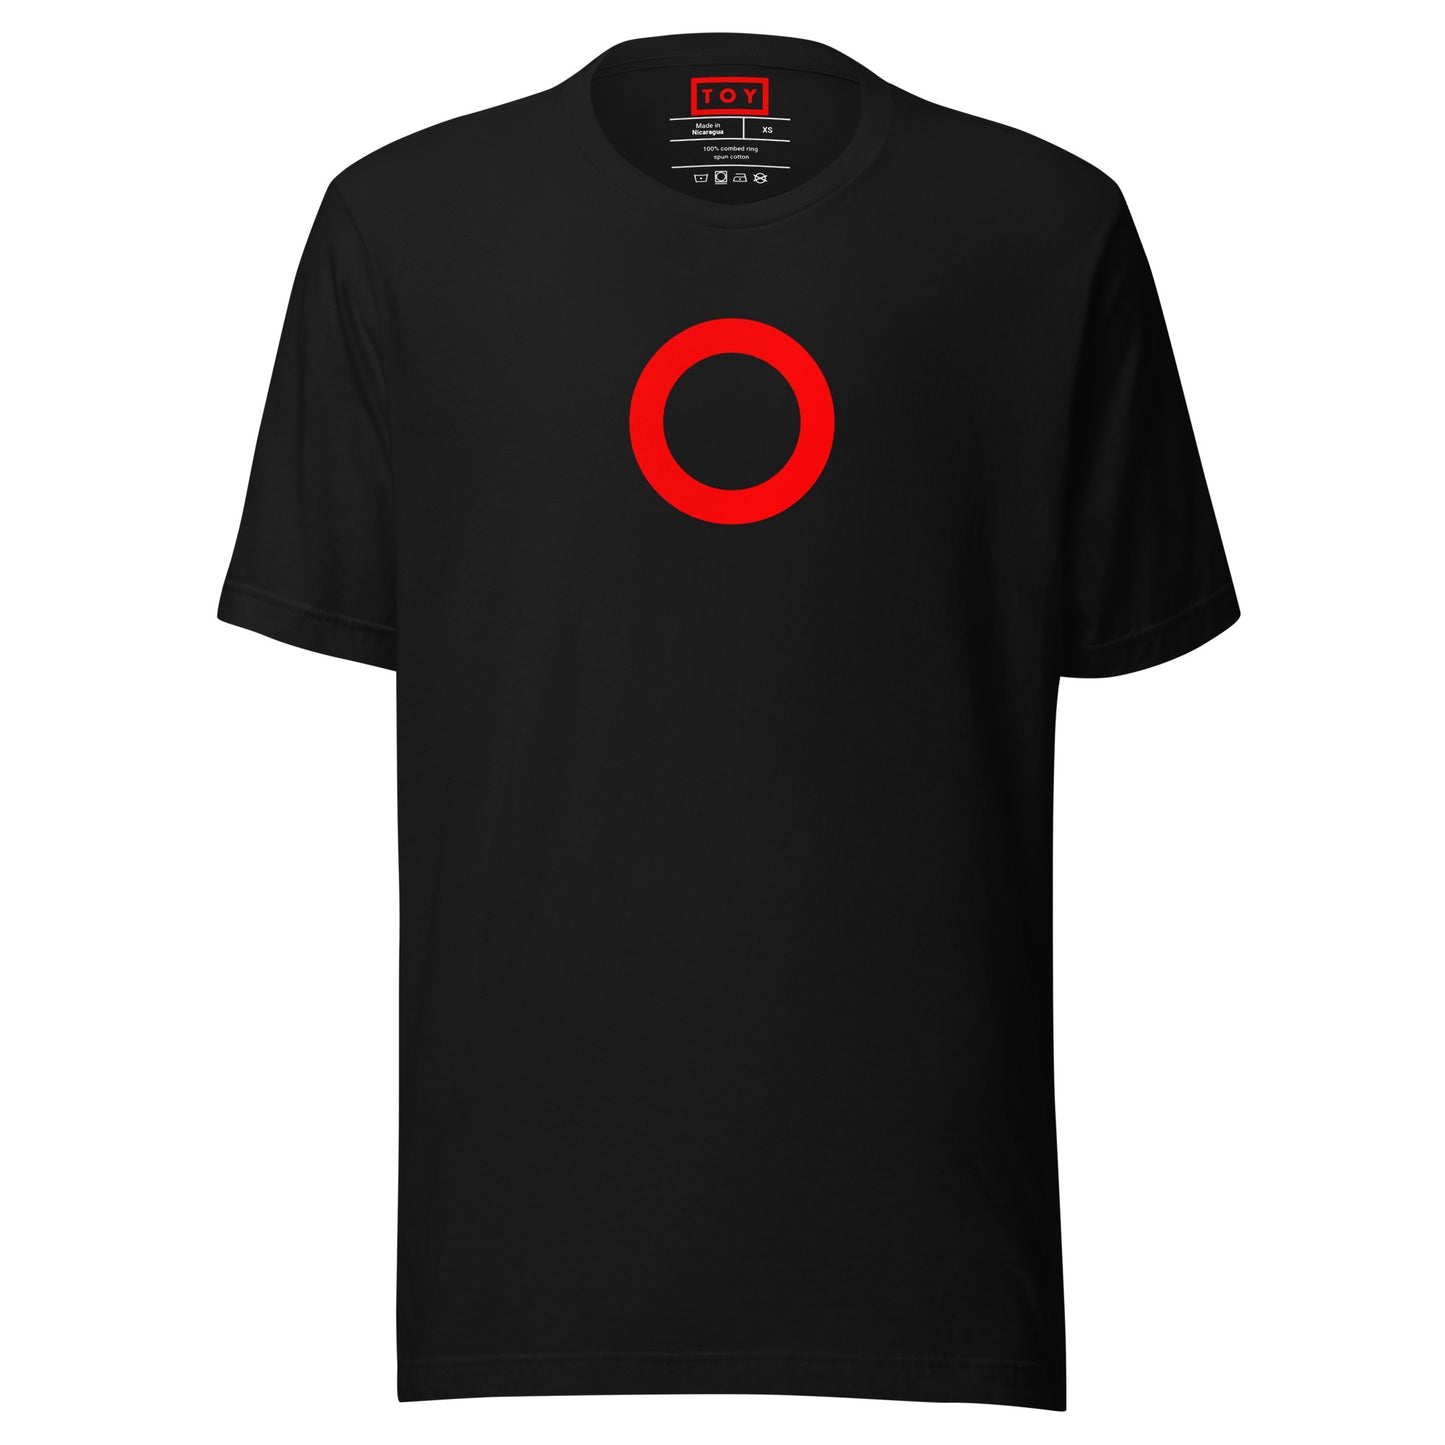 TOY [CIRCLE] Series (R) T-shirt